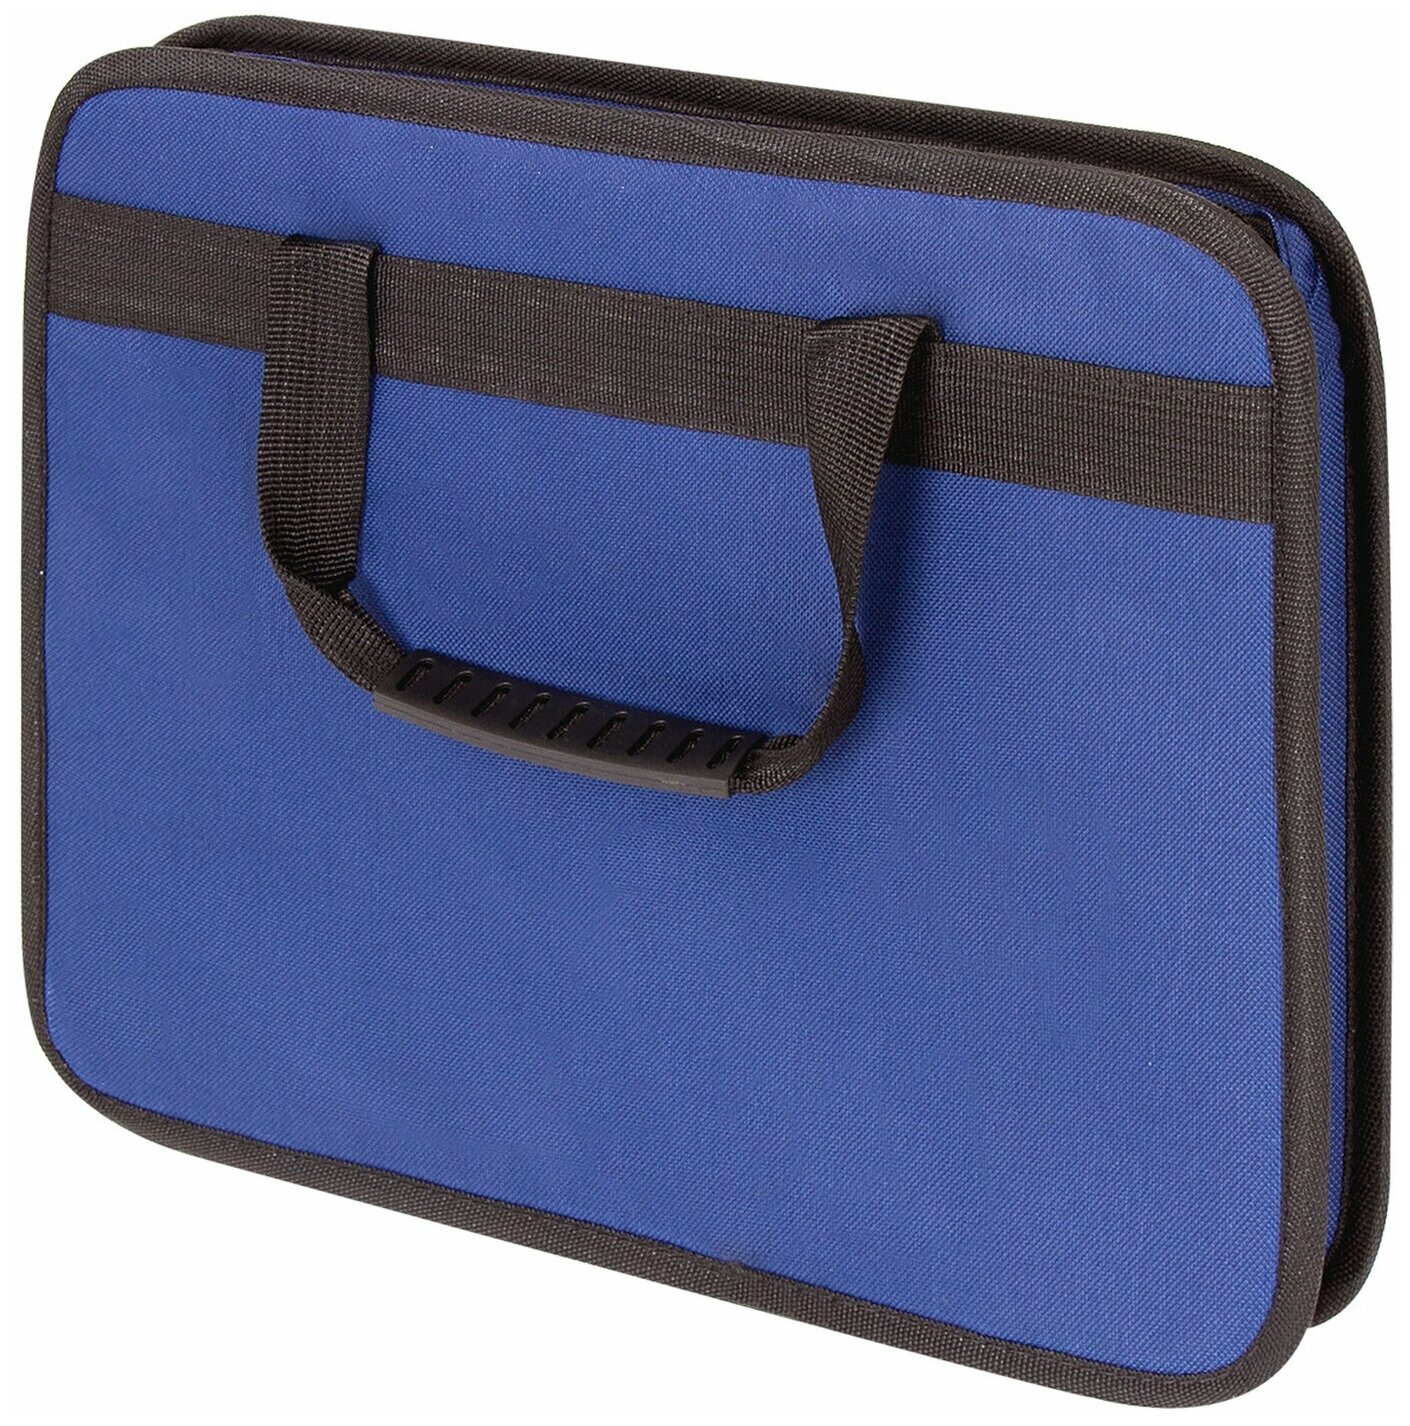 Папка-сумка/портфель для документов/бумаг/тетрадей/школы канцелярская с ручками на молнии Staff Everyday формата А4, синяя